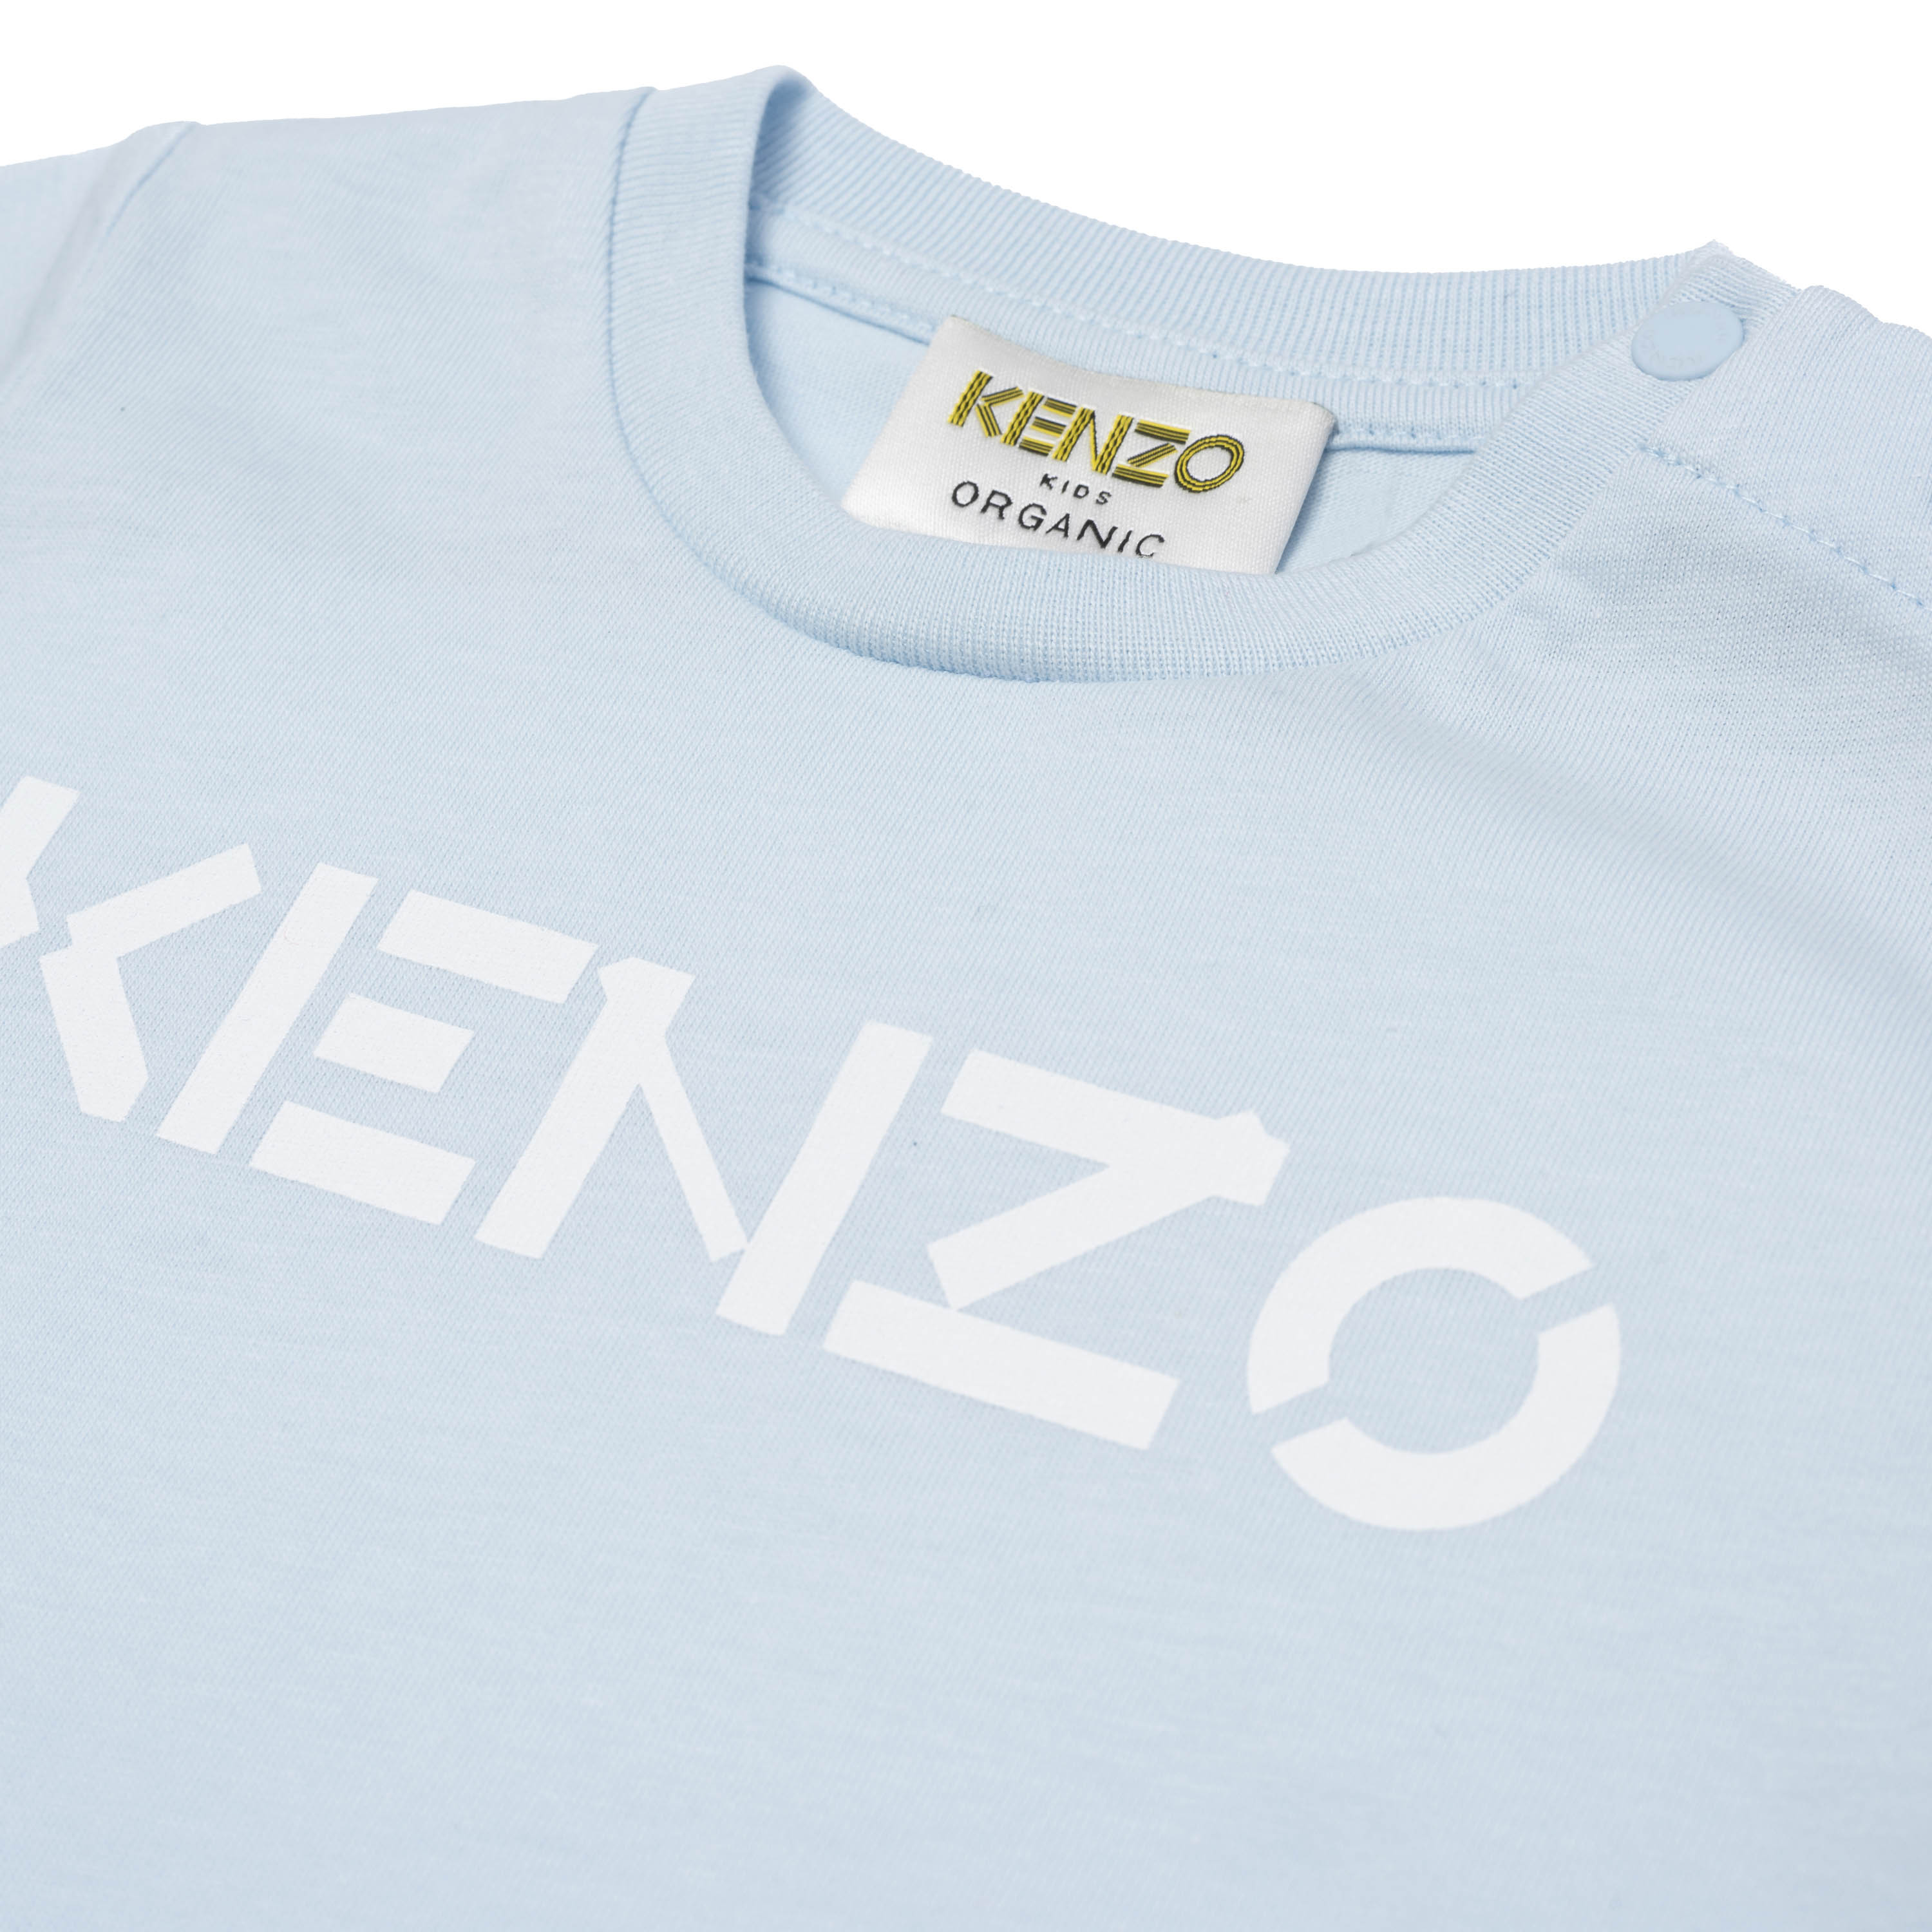 T-shirt in cotone con logo KENZO KIDS Per RAGAZZO